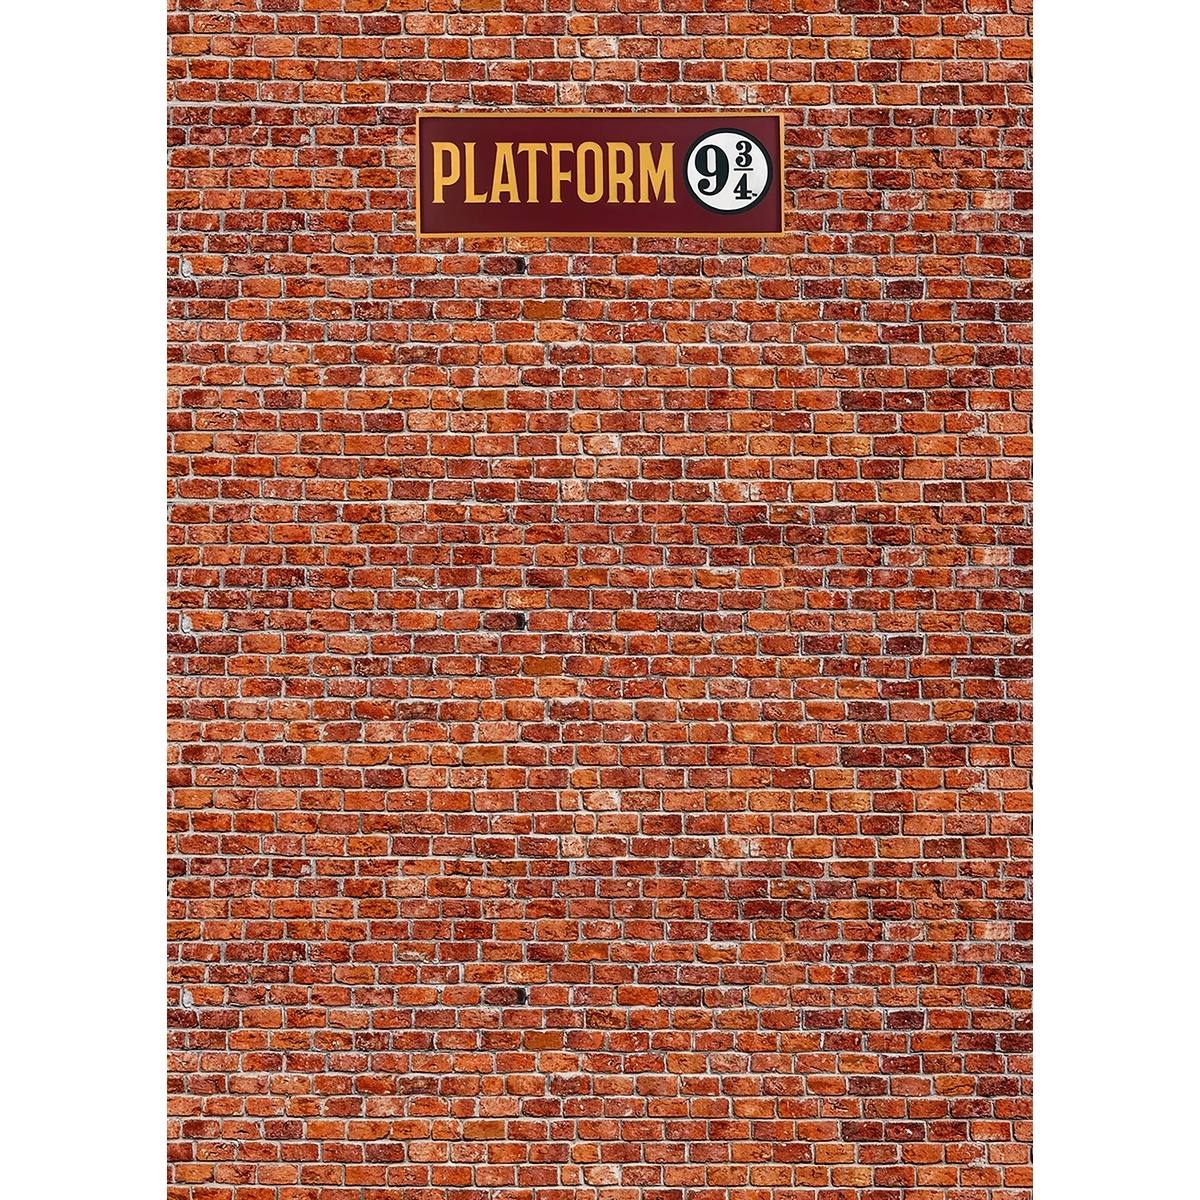 Dětská fototapeta Harry Potter Platform 9 3/4 182 x 252 cm, 4 díly